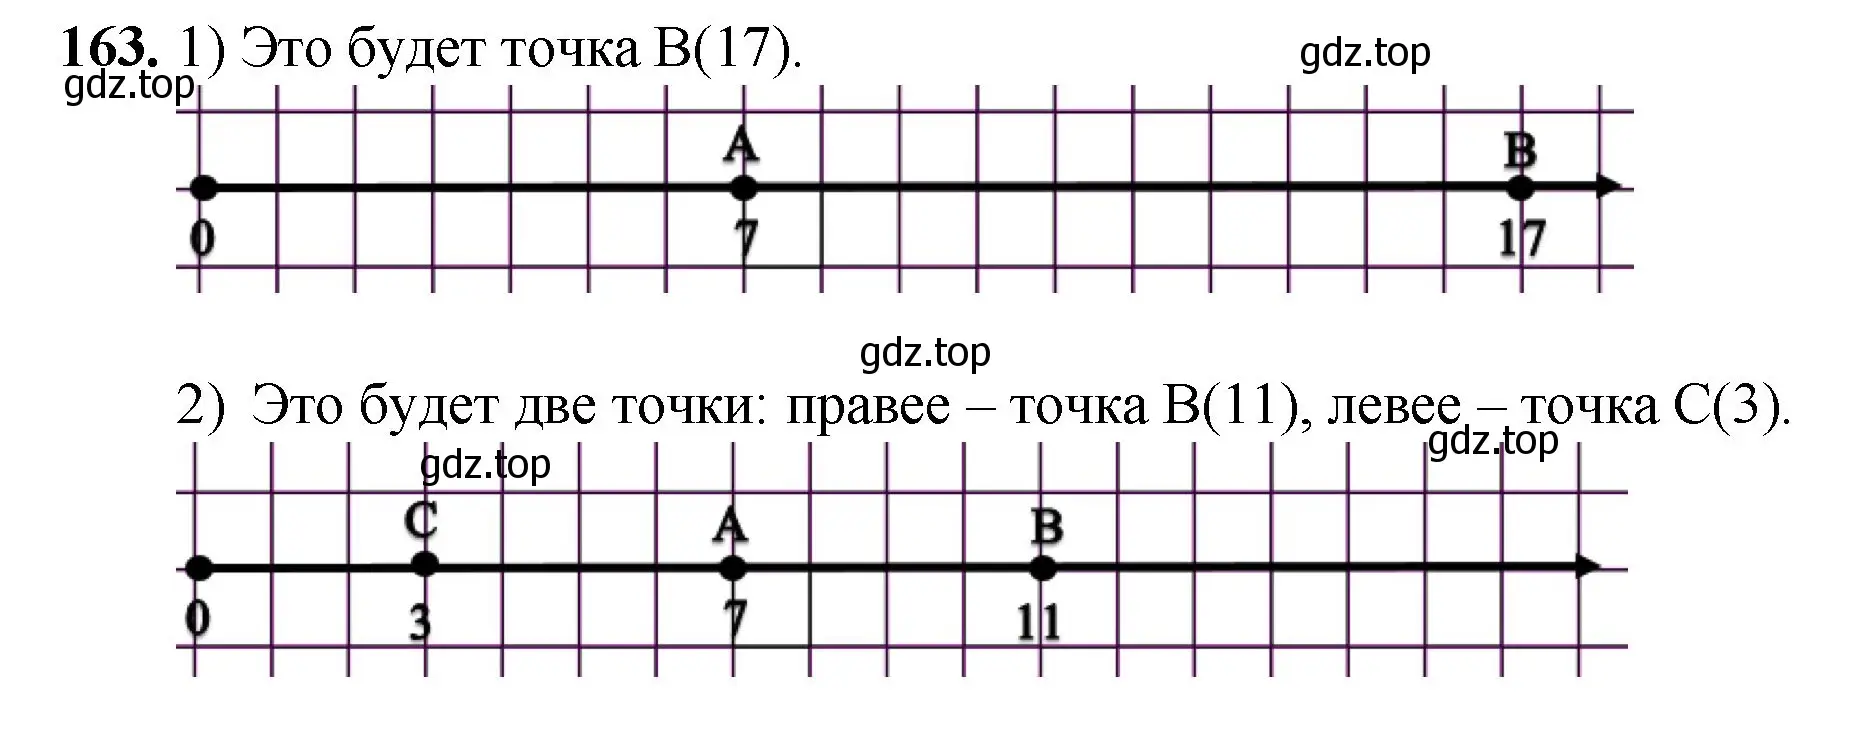 Решение номер 163 (страница 45) гдз по математике 5 класс Мерзляк, Полонский, учебник